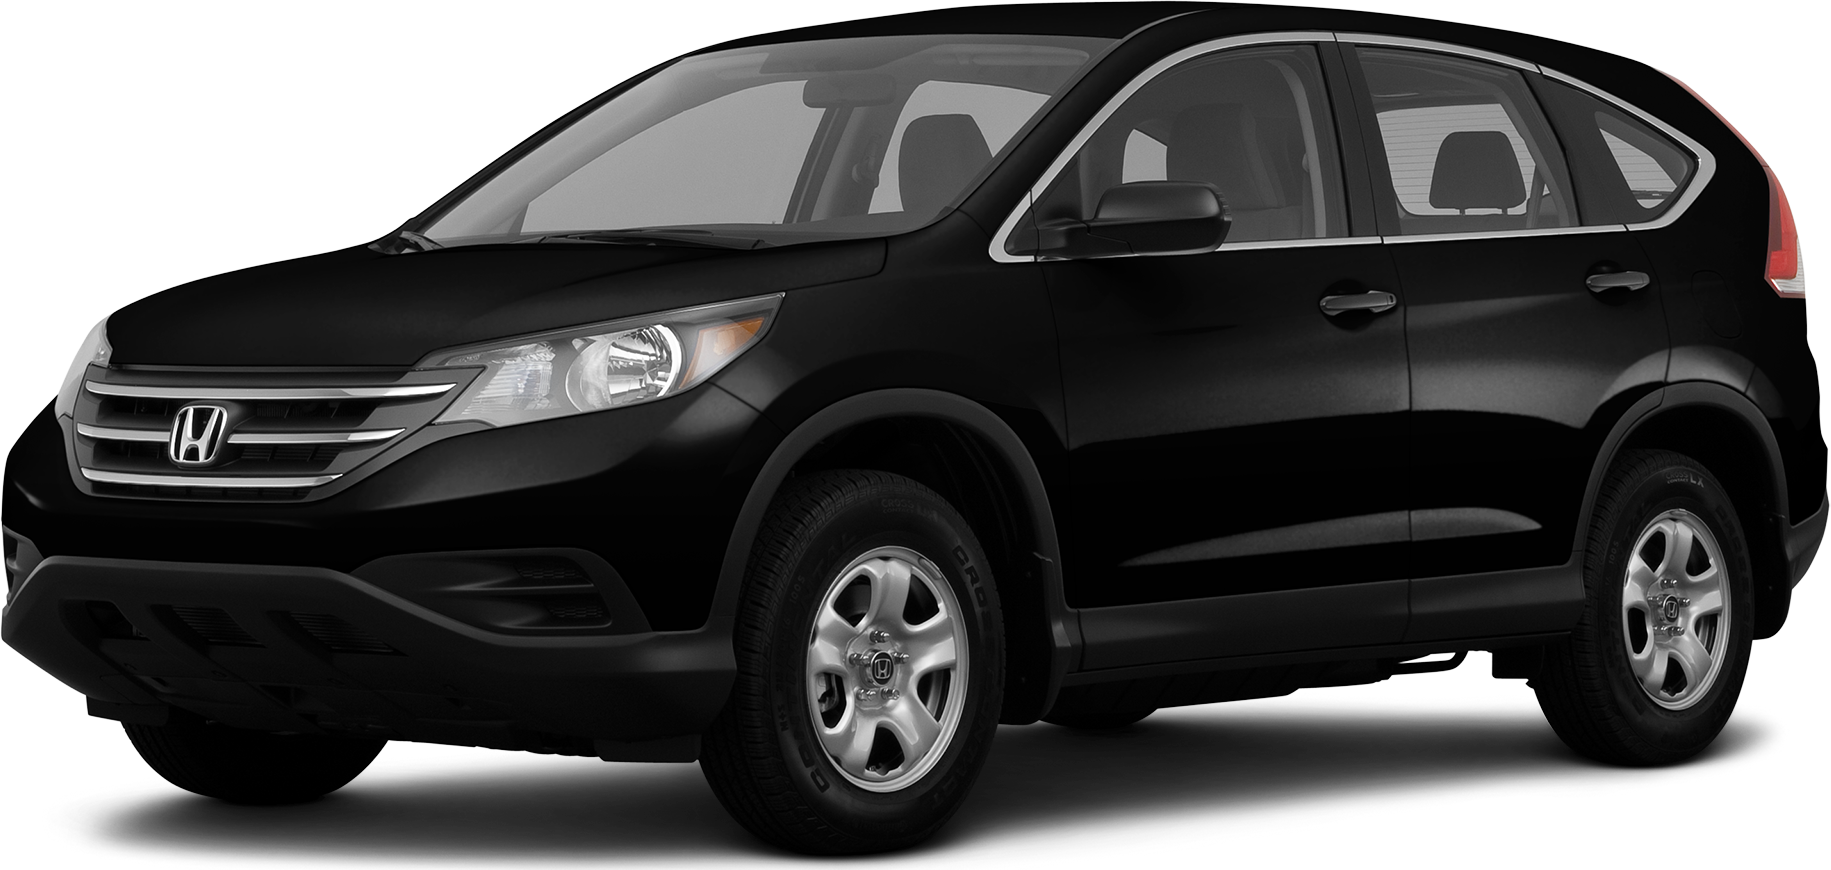 Đánh giá xe Honda CRV 2013